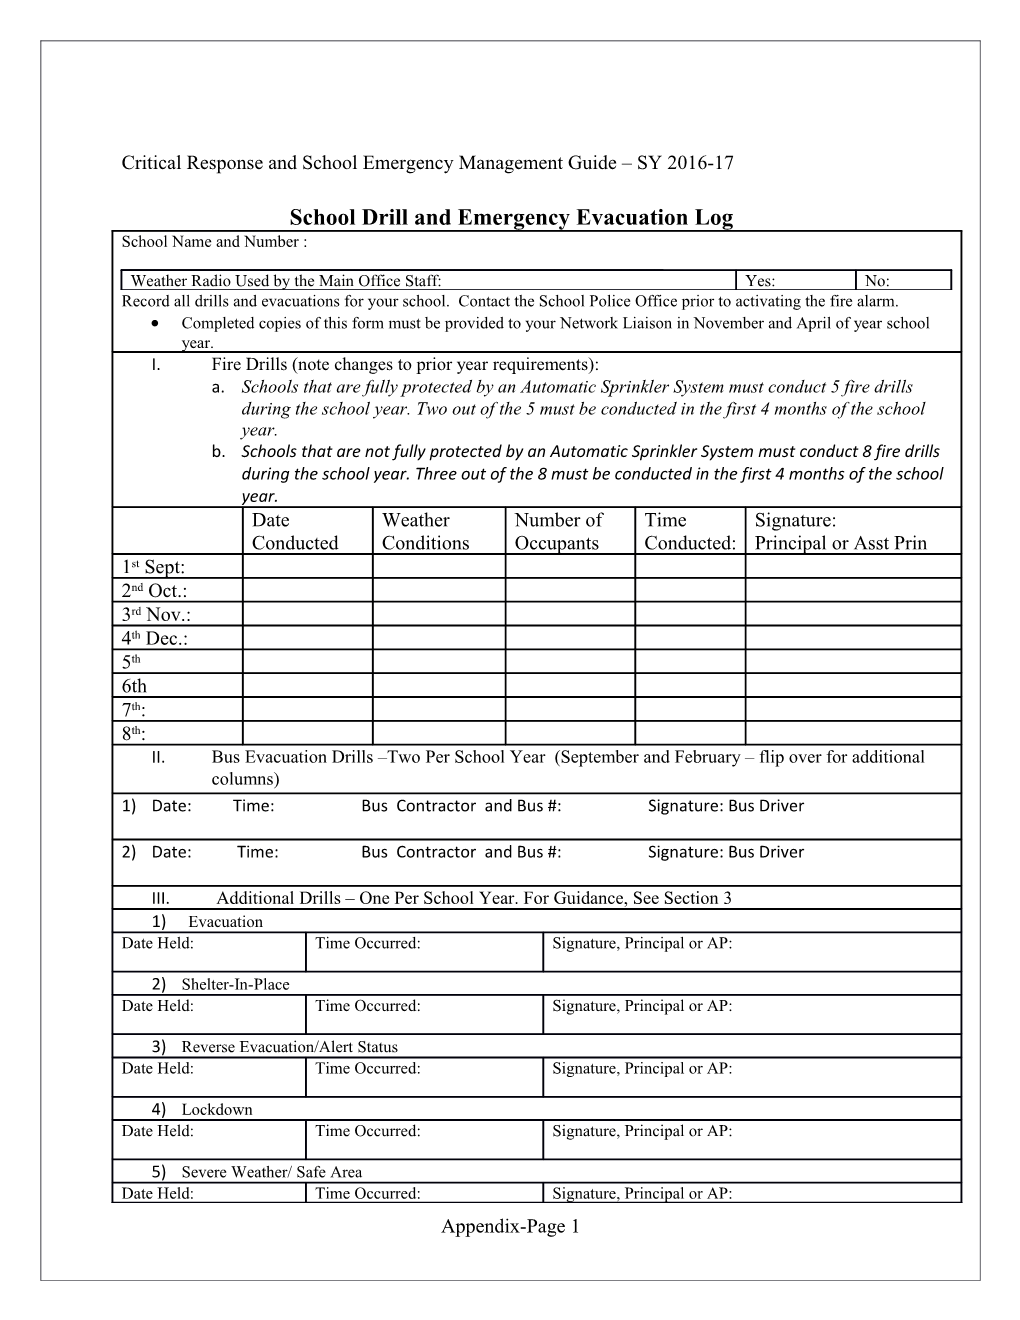 School Drill and Emergency Evacuation Log